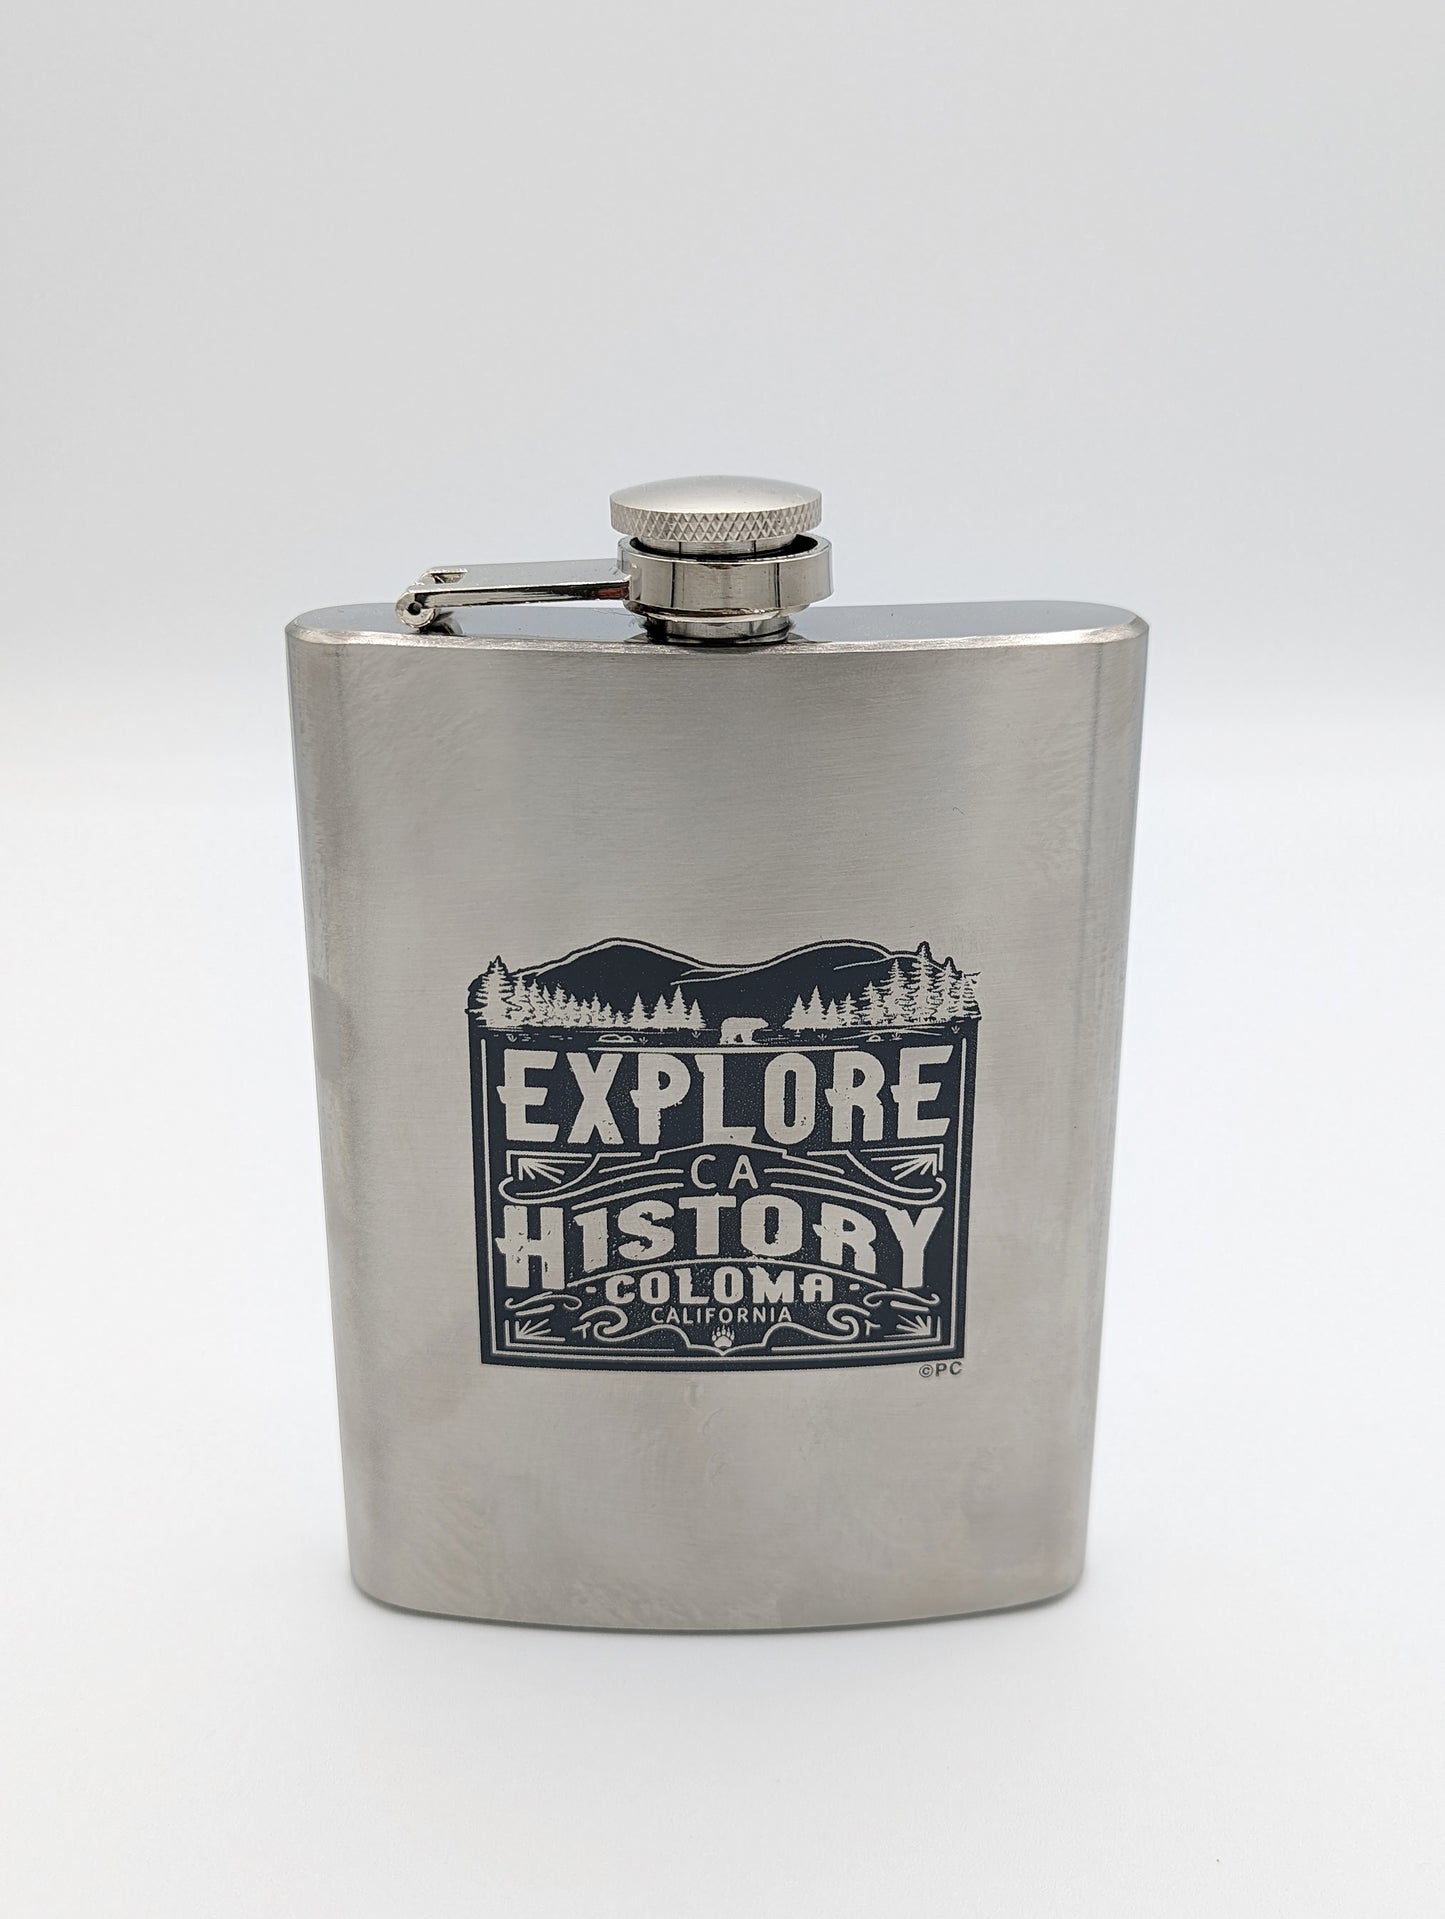 Coloma Explore California History Flask